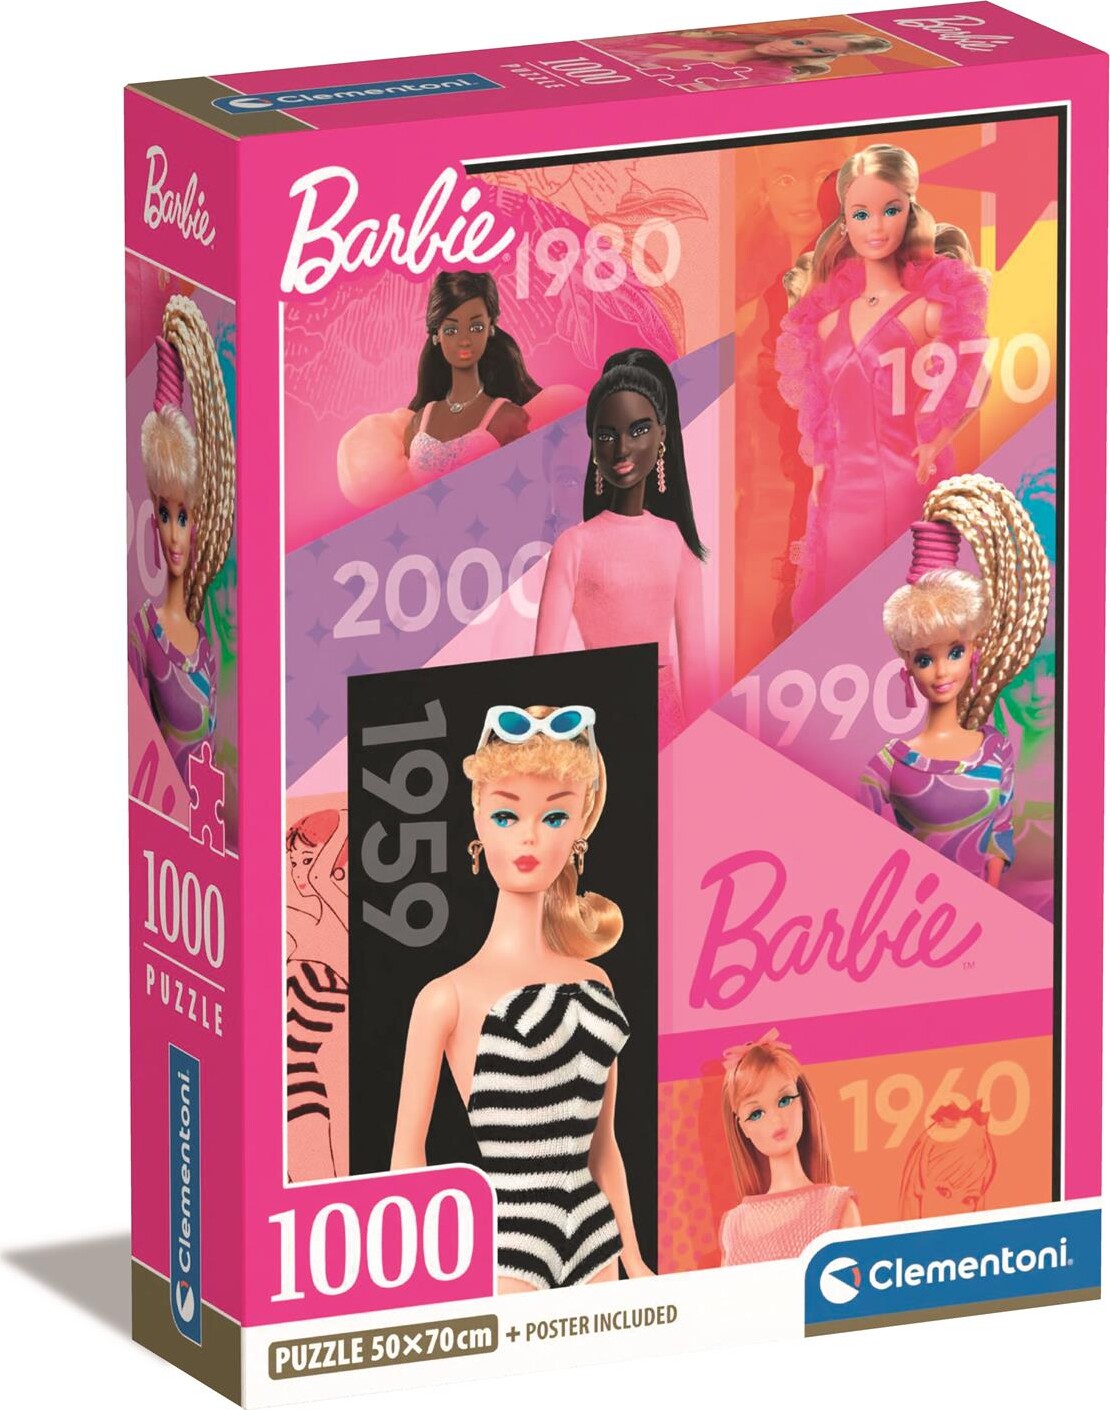 Billede af Barbie Puslespil - 1000 Brikker - Clementoni hos Gucca.dk